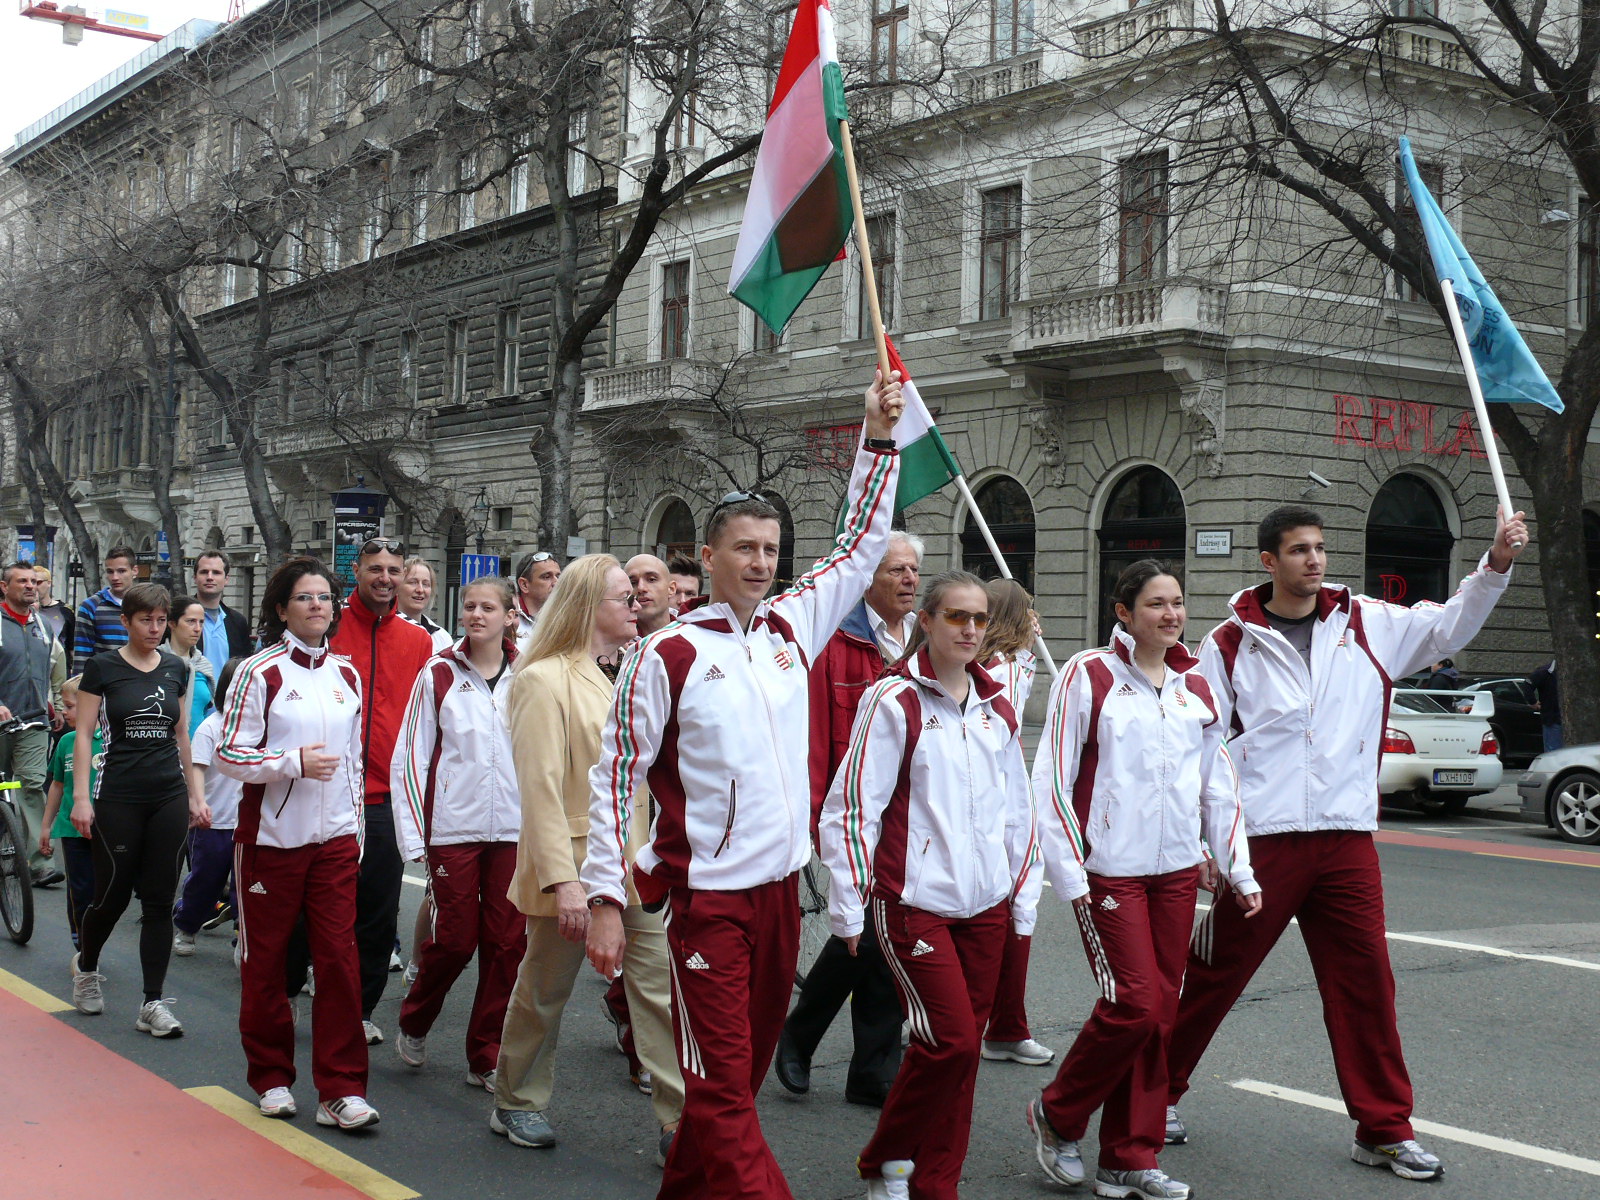 Vasárnap érkezik vissza Budapestre a Drogmentes Magyarországért Maraton